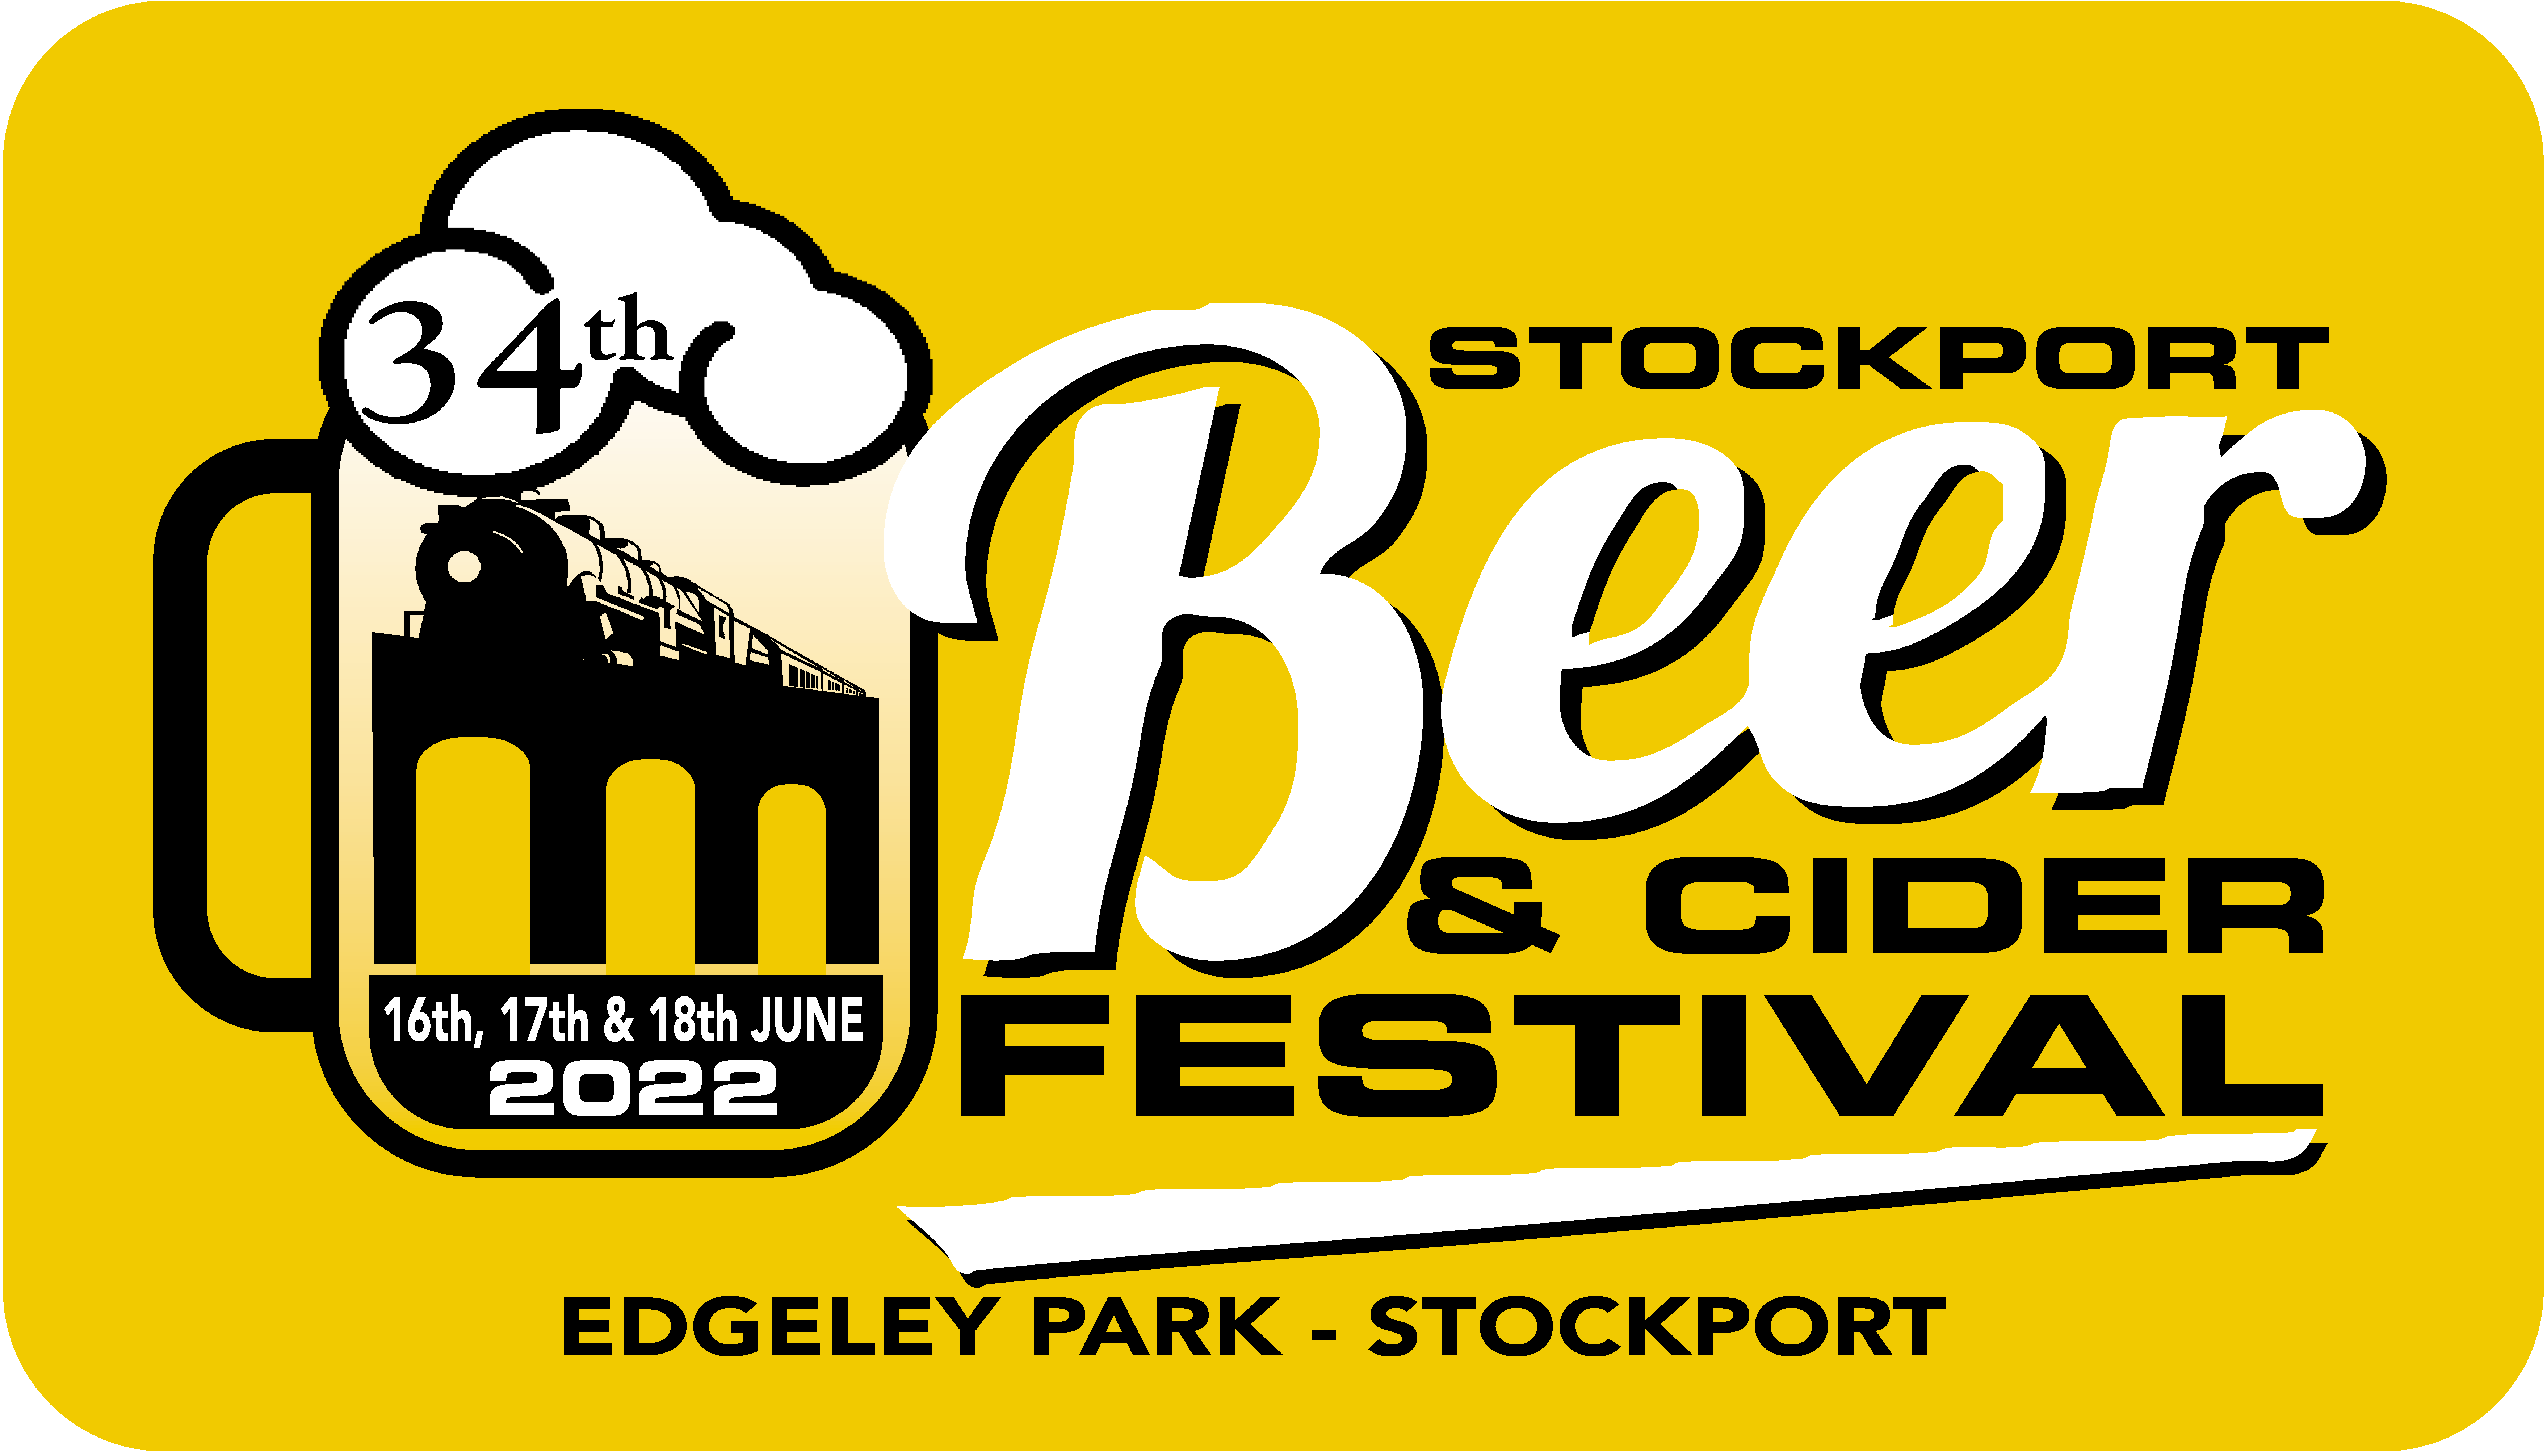 Stockport Beer & Cider Festival 2022 Logo